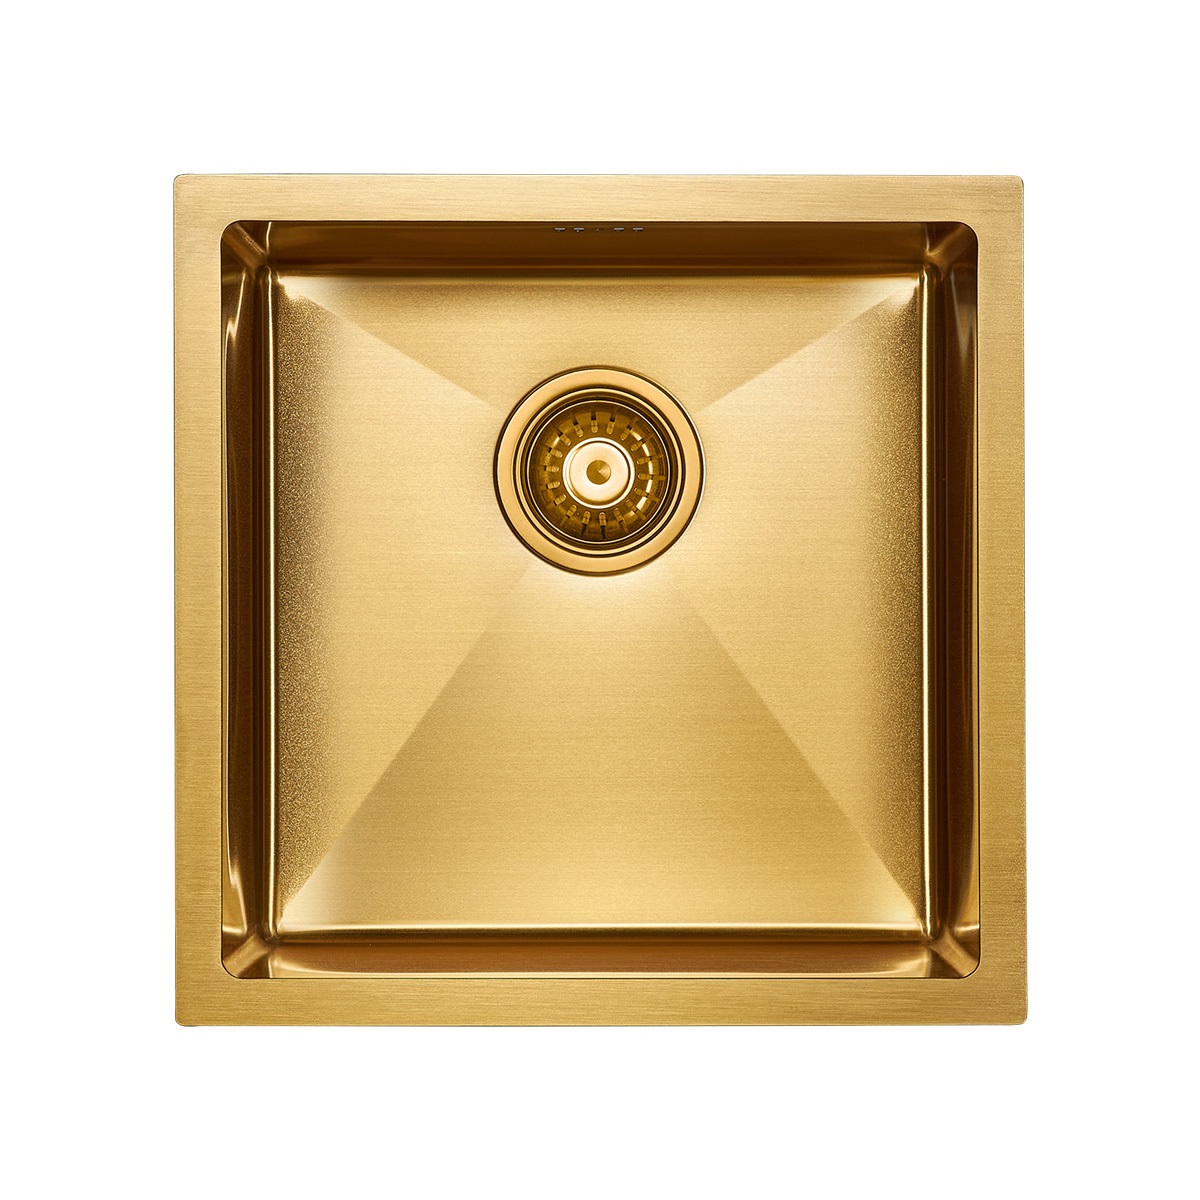 Мойка Gerberg PM214444-BG 440х440 мм, нержавеющая сталь, 1 чаша, квадратная, цвет брашированное золото